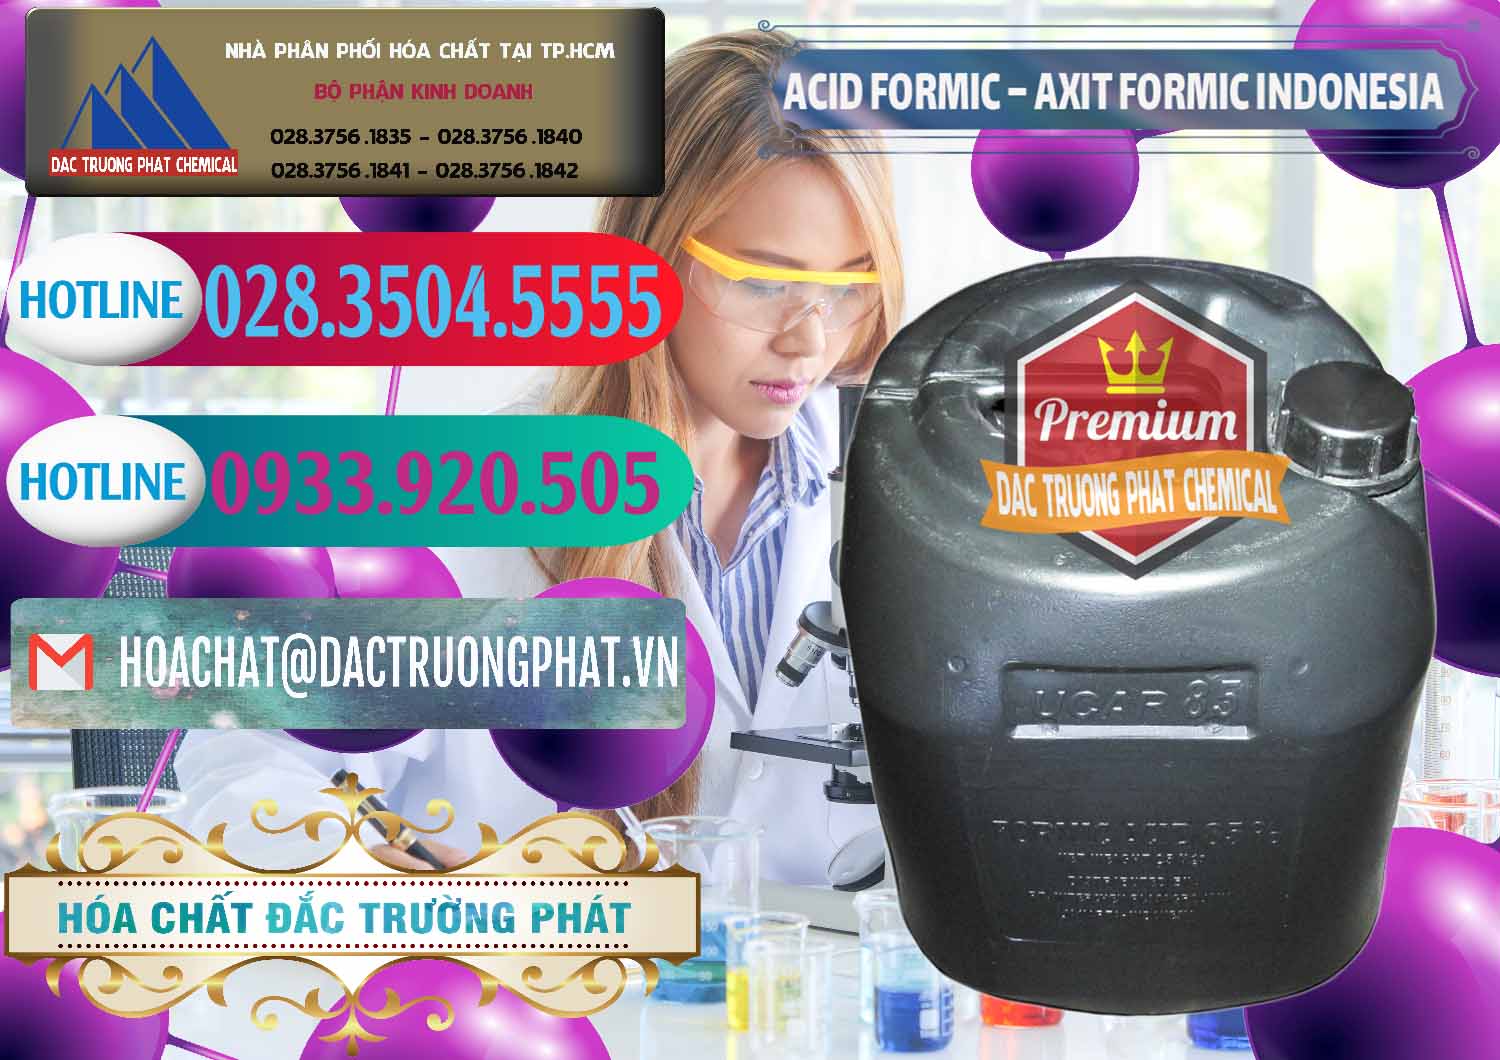 Cty chuyên phân phối - bán Acid Formic - Axit Formic Indonesia - 0026 - Cty cung cấp và nhập khẩu hóa chất tại TP.HCM - truongphat.vn